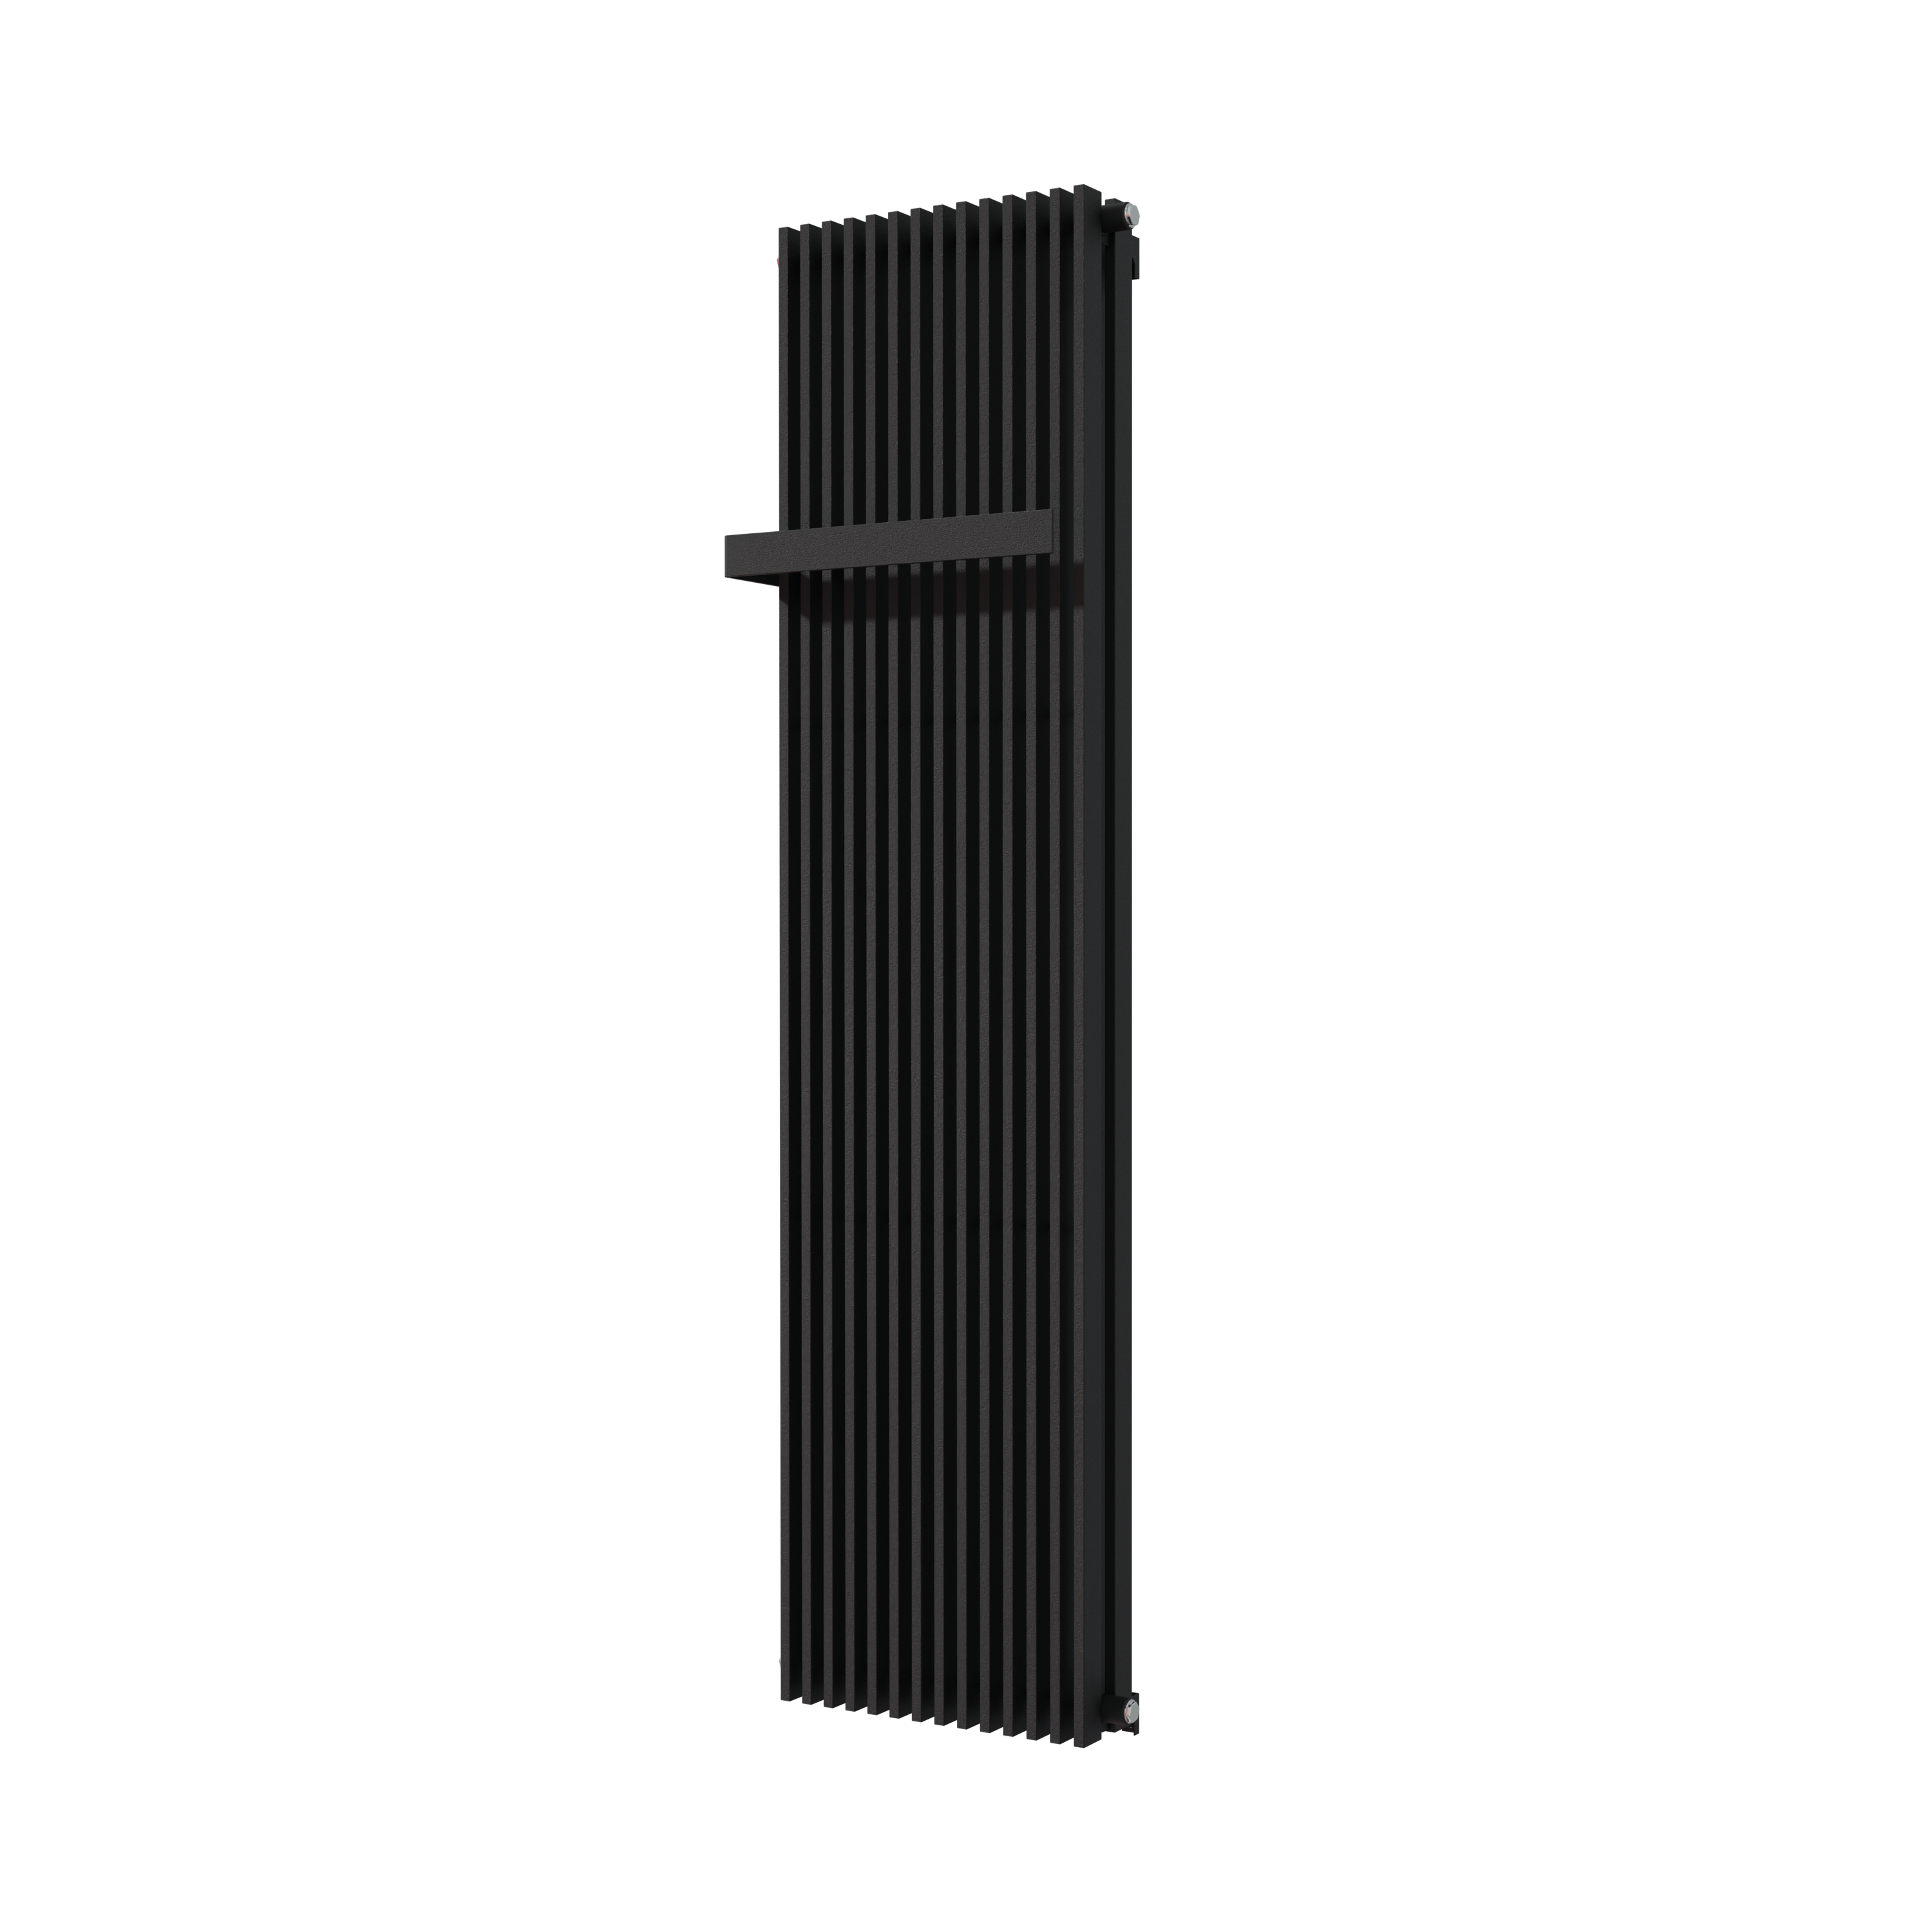 Vipera Corrason dubbele badkamerradiator 50 x 180 cm centrale verwarming mat zwart zij- en middenaansluiting 2,857W